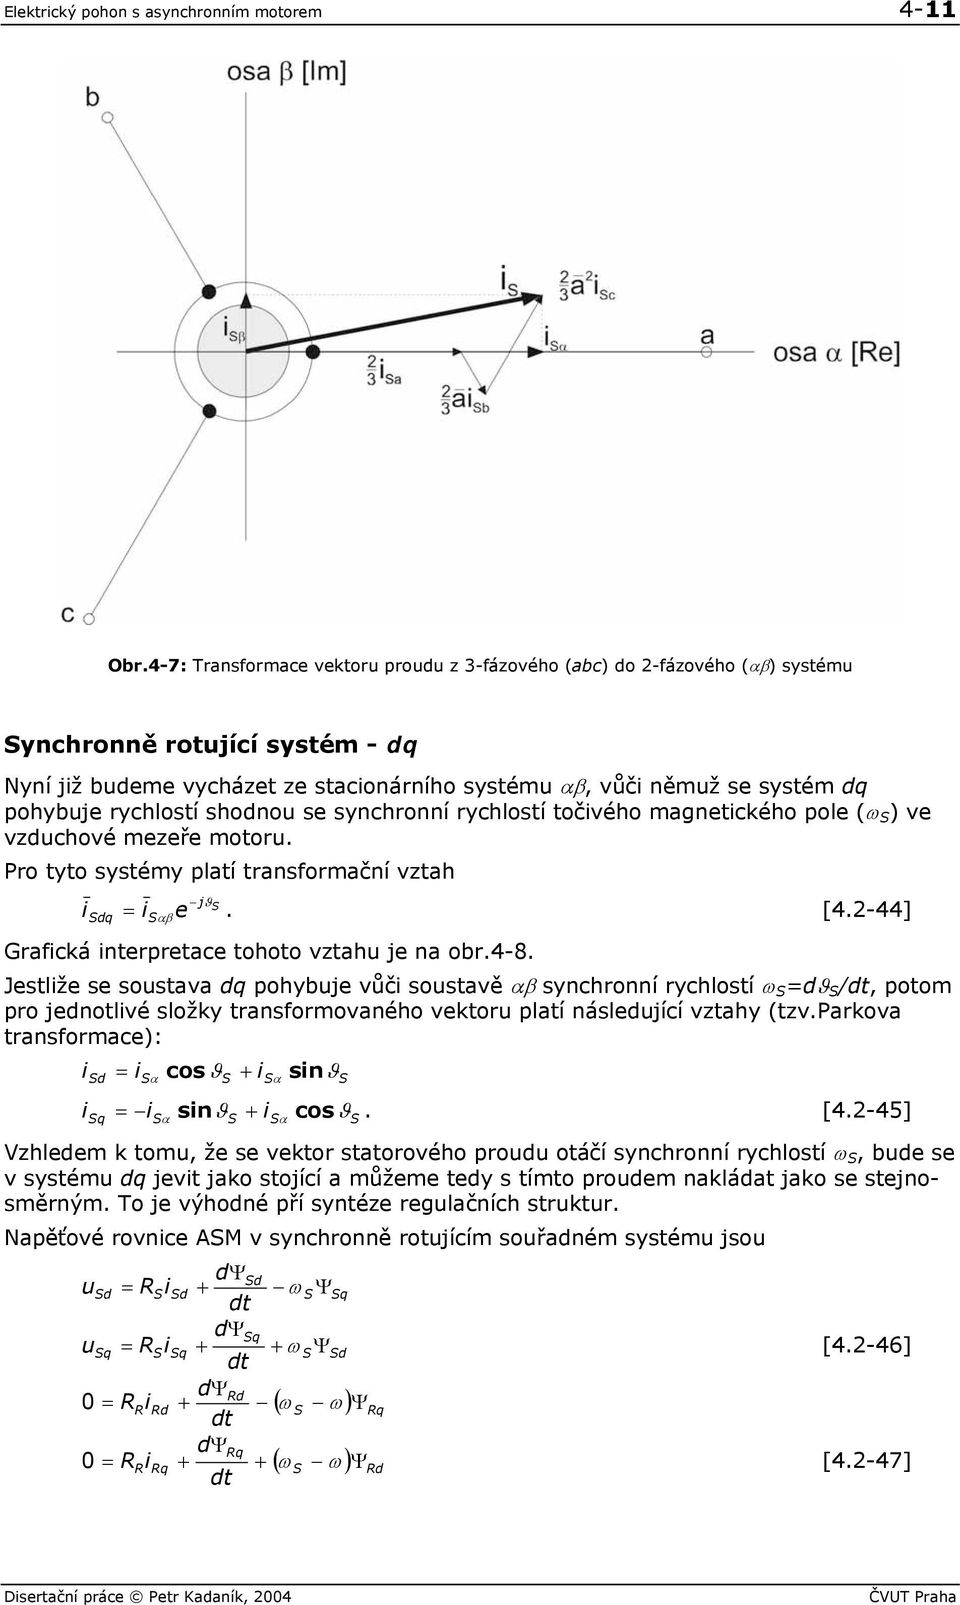 shodnou se synchronní rychlostí točvého agnetcého pole (ω ) ve vzduchové ezeře otoru. Pro tyto systéy platí transforační vztah dq αβ j e. [4.-44] Grafcá nterpretace tohoto vztahu je na obr.4-8.